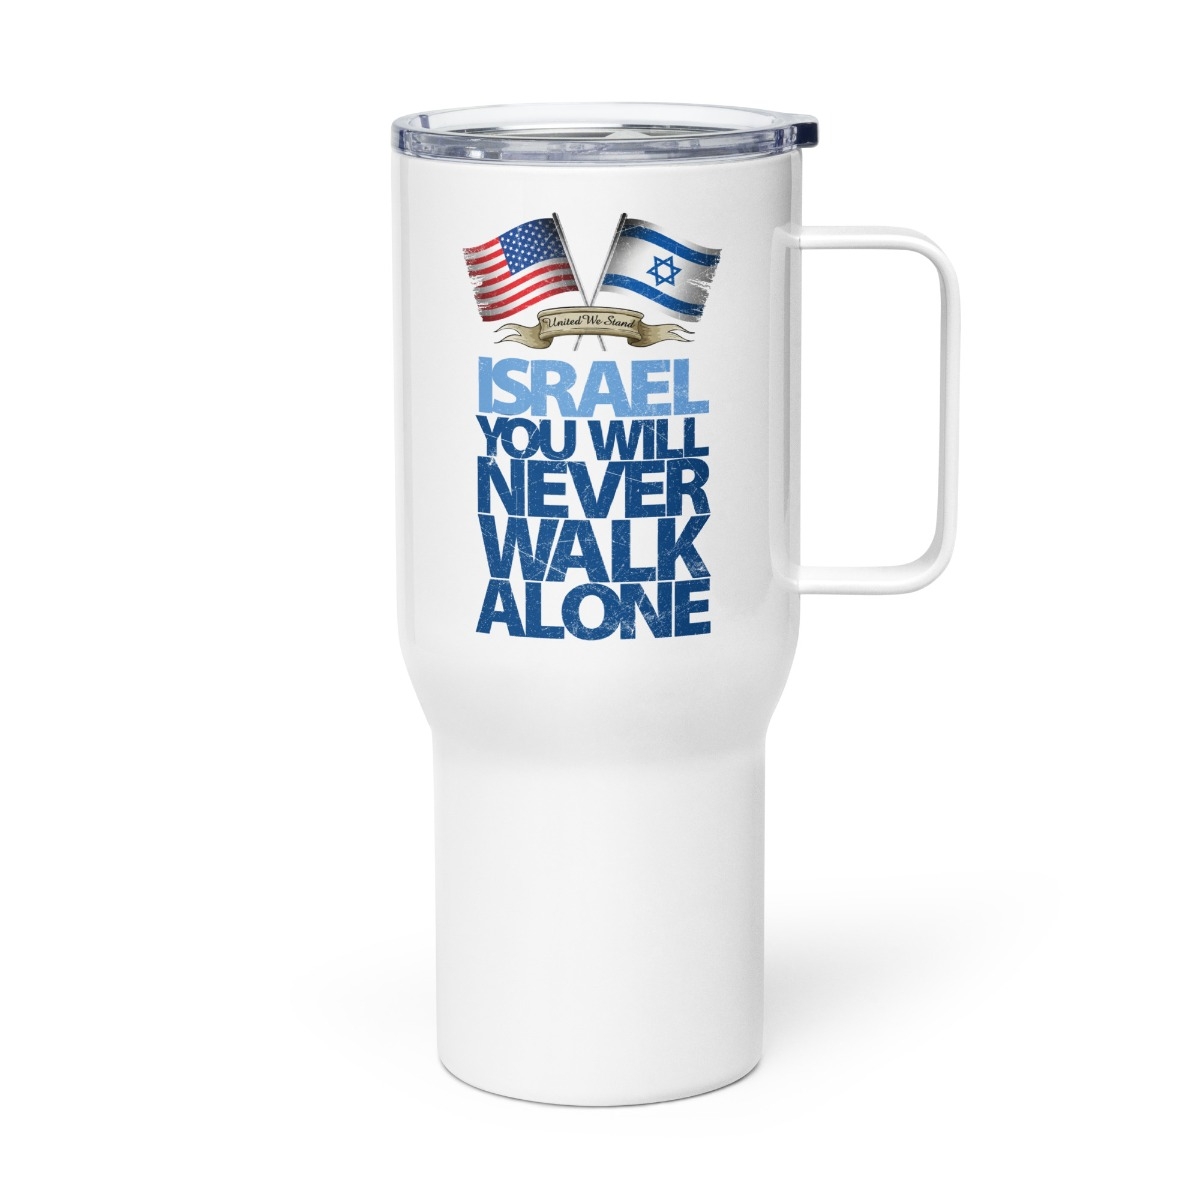 25 oz Travel mug with a handle